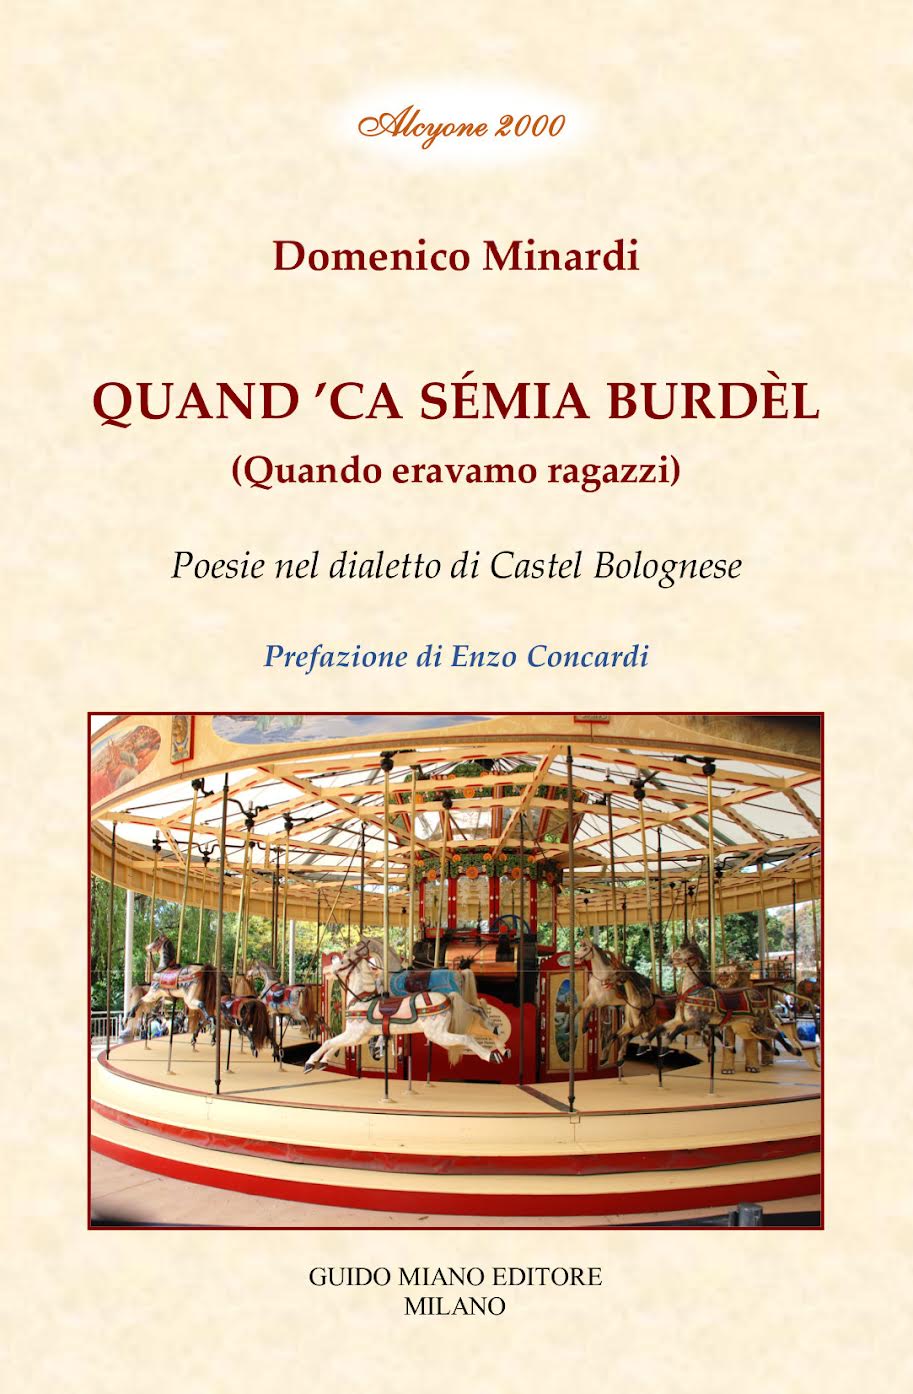 recensione del prof. Floriano Romboli al libro "Quand 'ca e sémia burdèl" di Domenico Minardi.